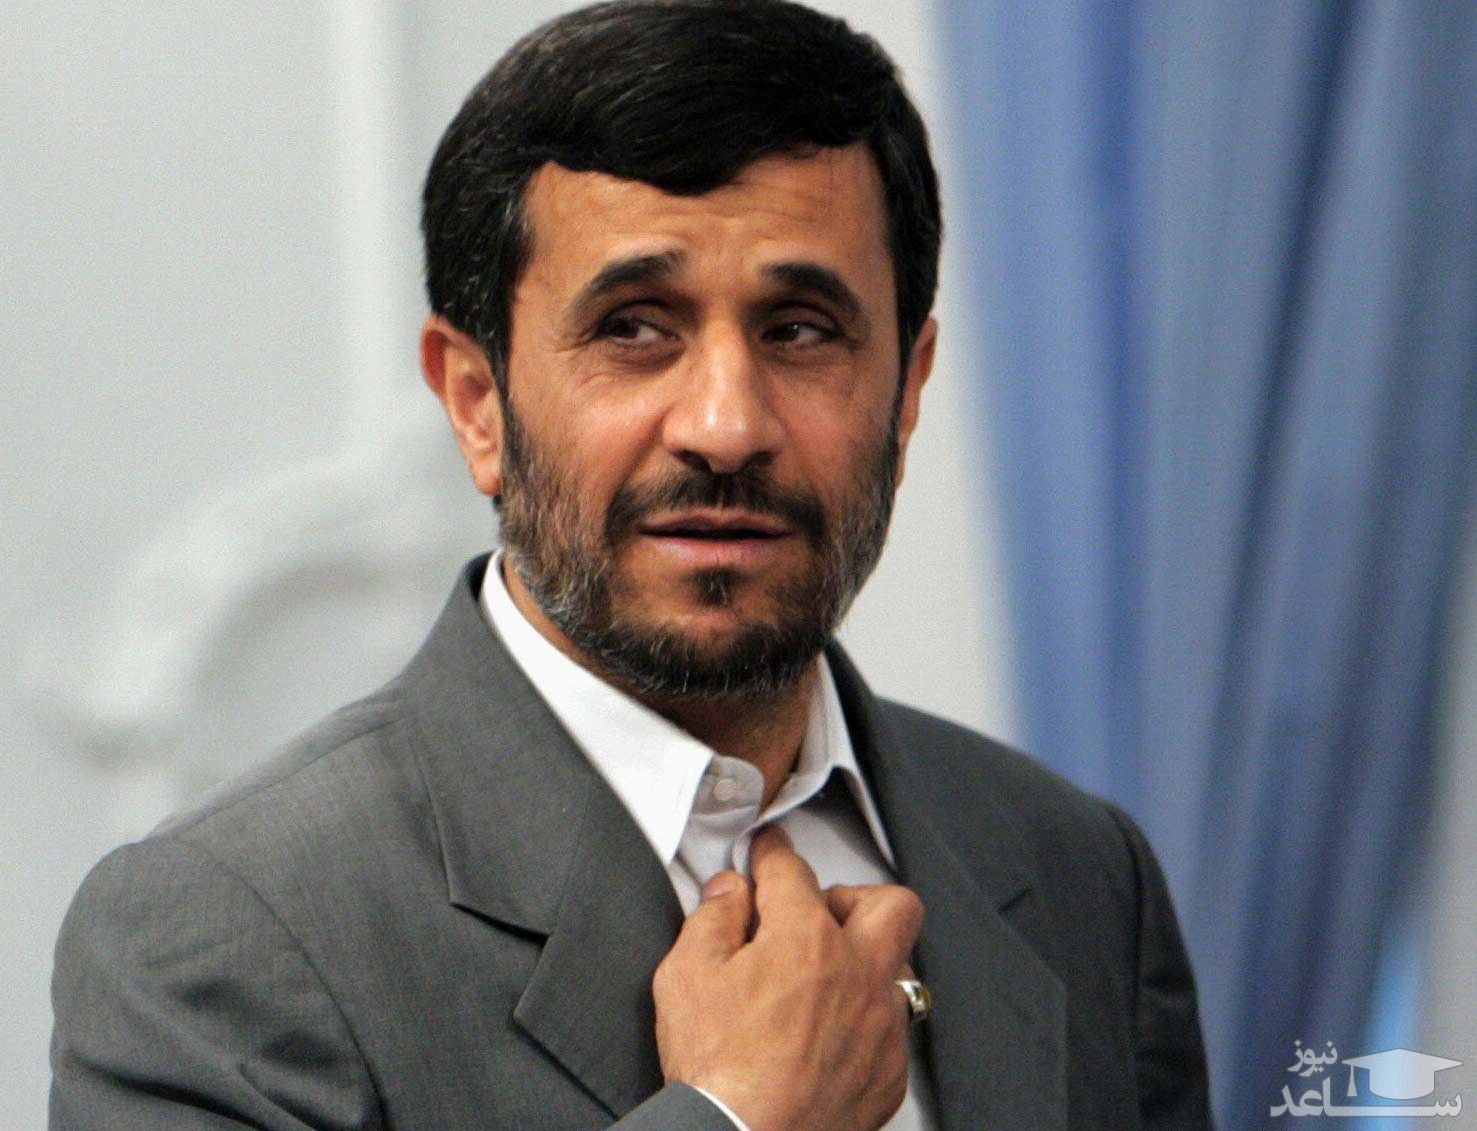 محمود احمدی‌نژاد: حکومت دینی واژه‌ای غلط و من‌درآوردی است